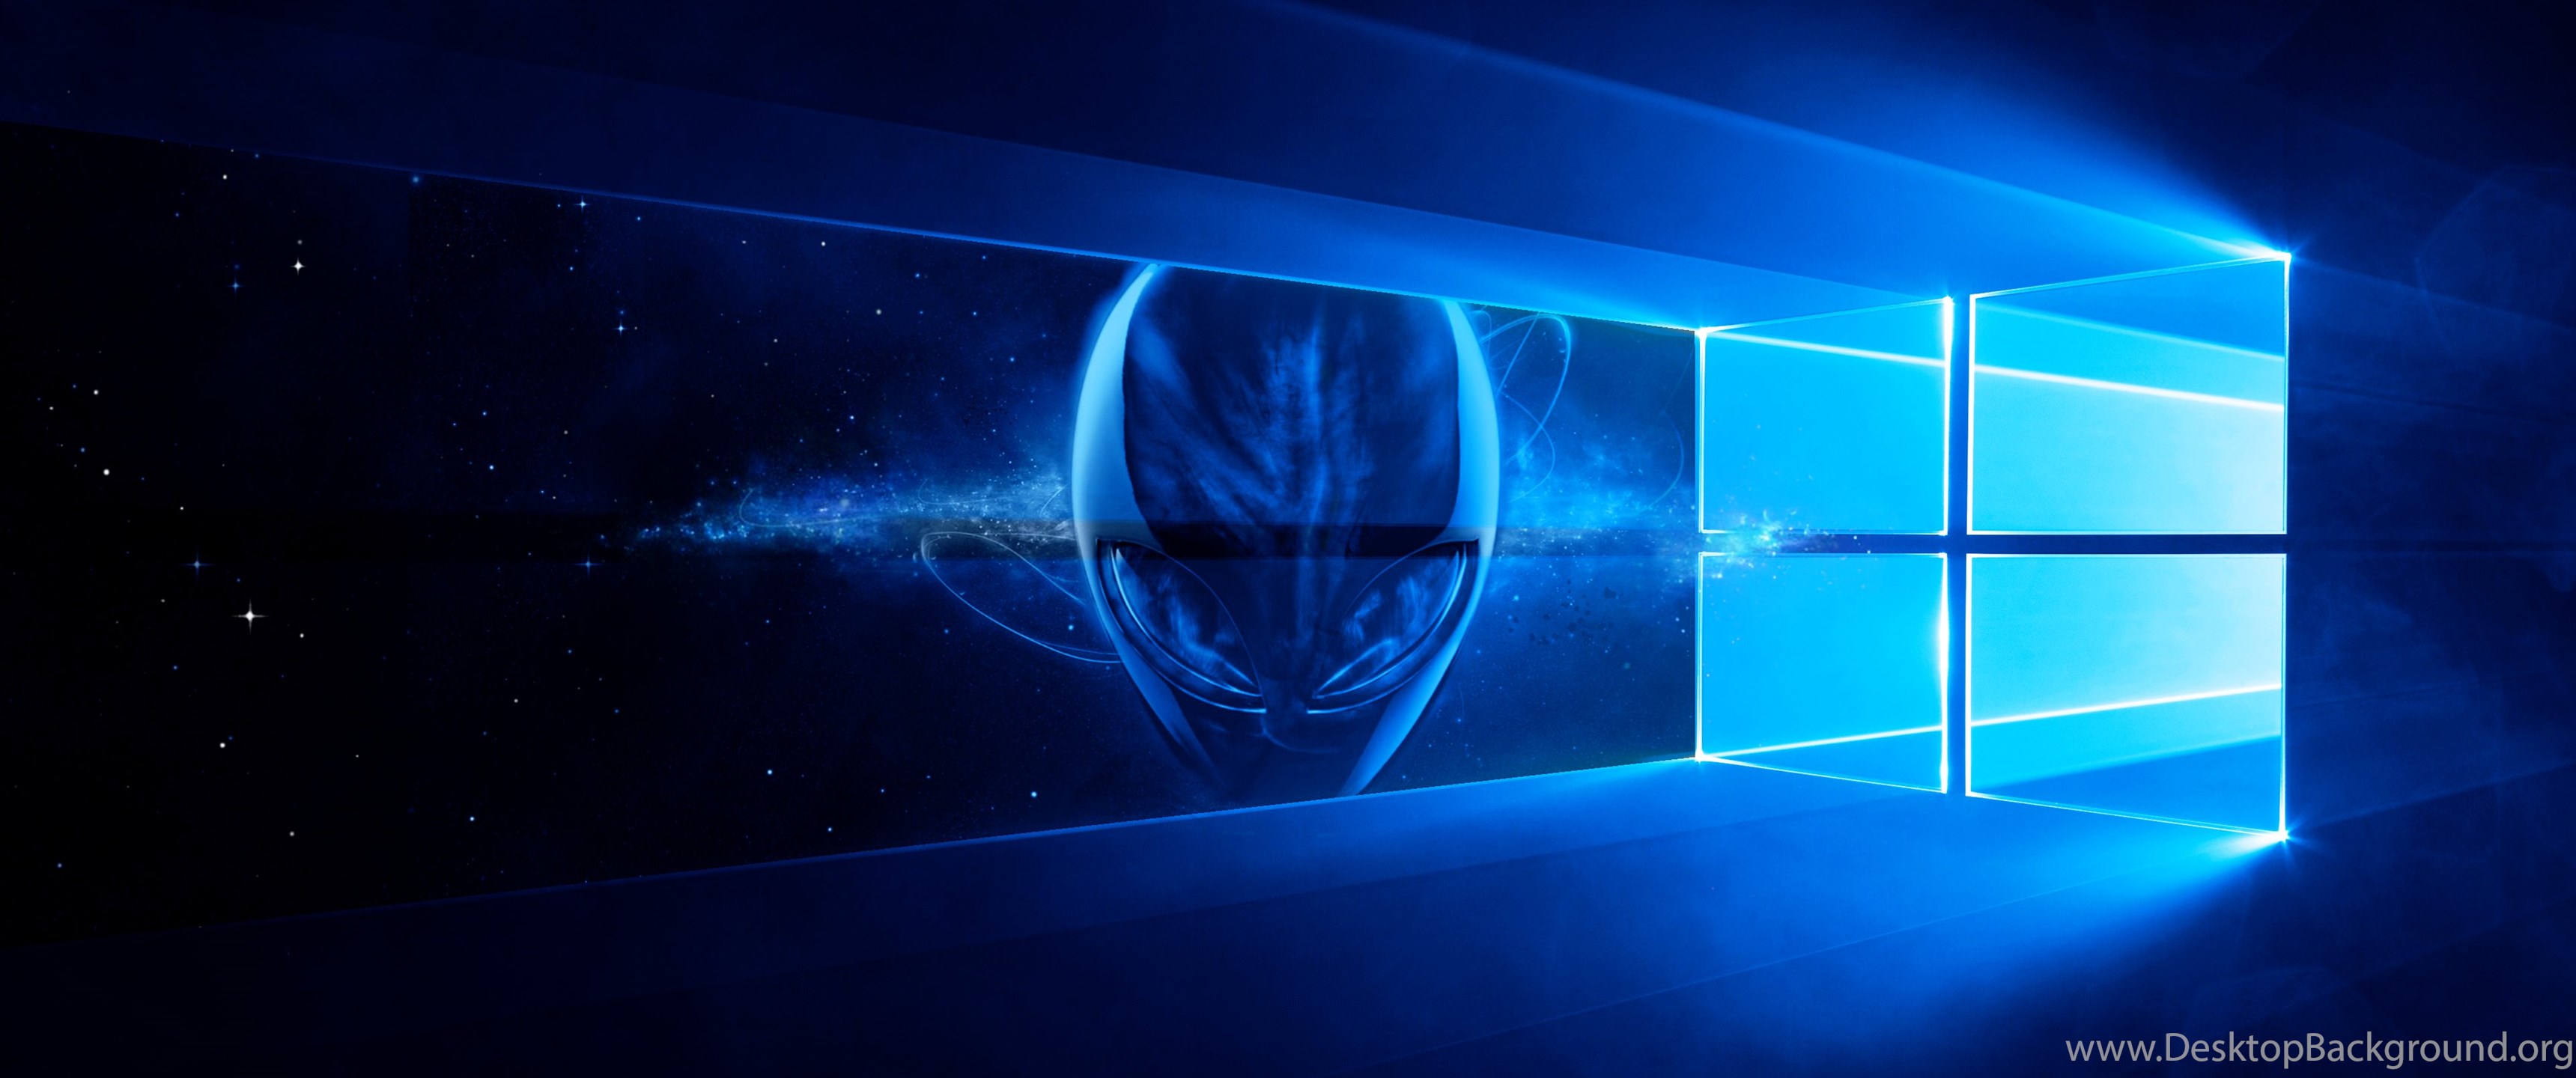 fond d'écran bleu alienware,bleu,bleu électrique,lumière,l'eau,conception